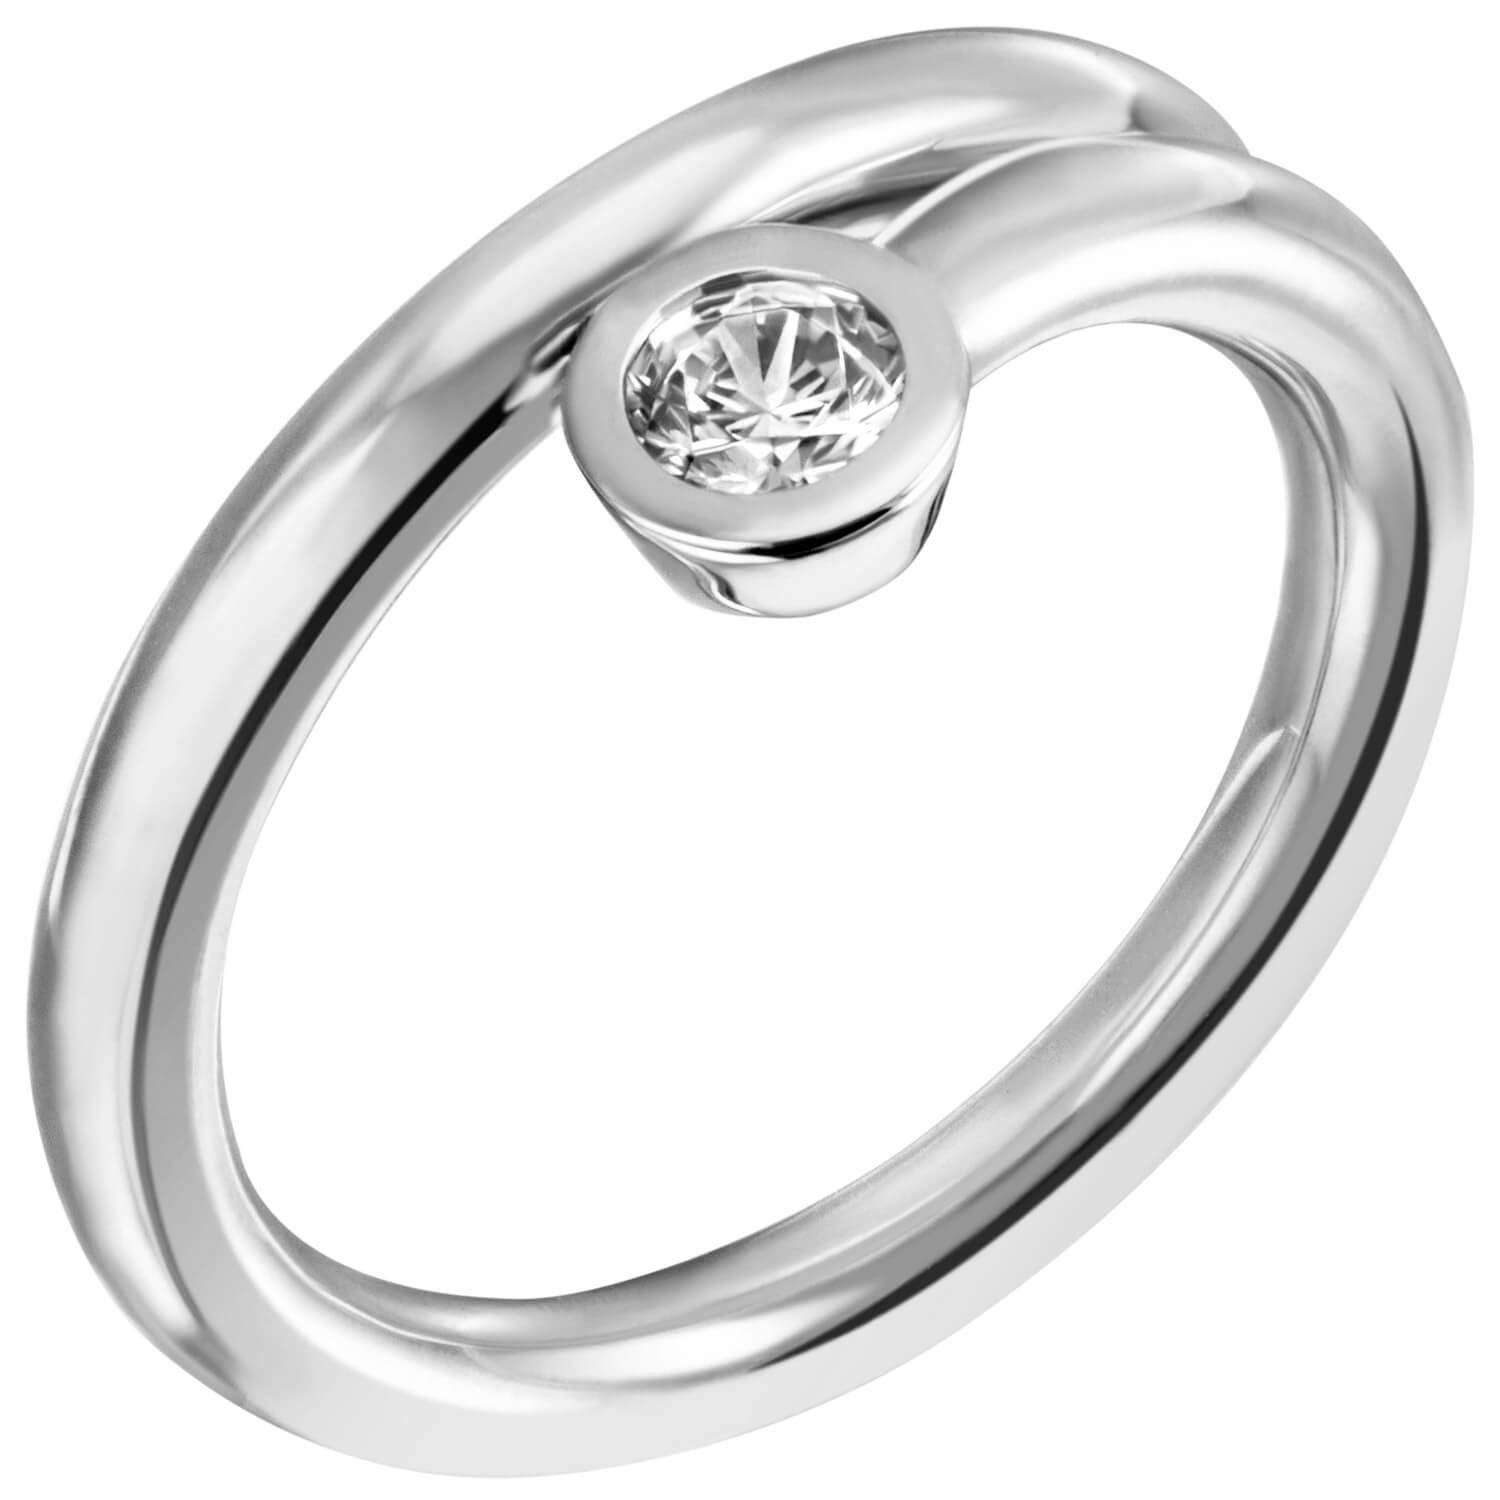 Krone schlicht, Damenring Ring Silber Silber 925 weiß Schmuck 925 mit Silberring Solitär spiralförmig Zirkonia